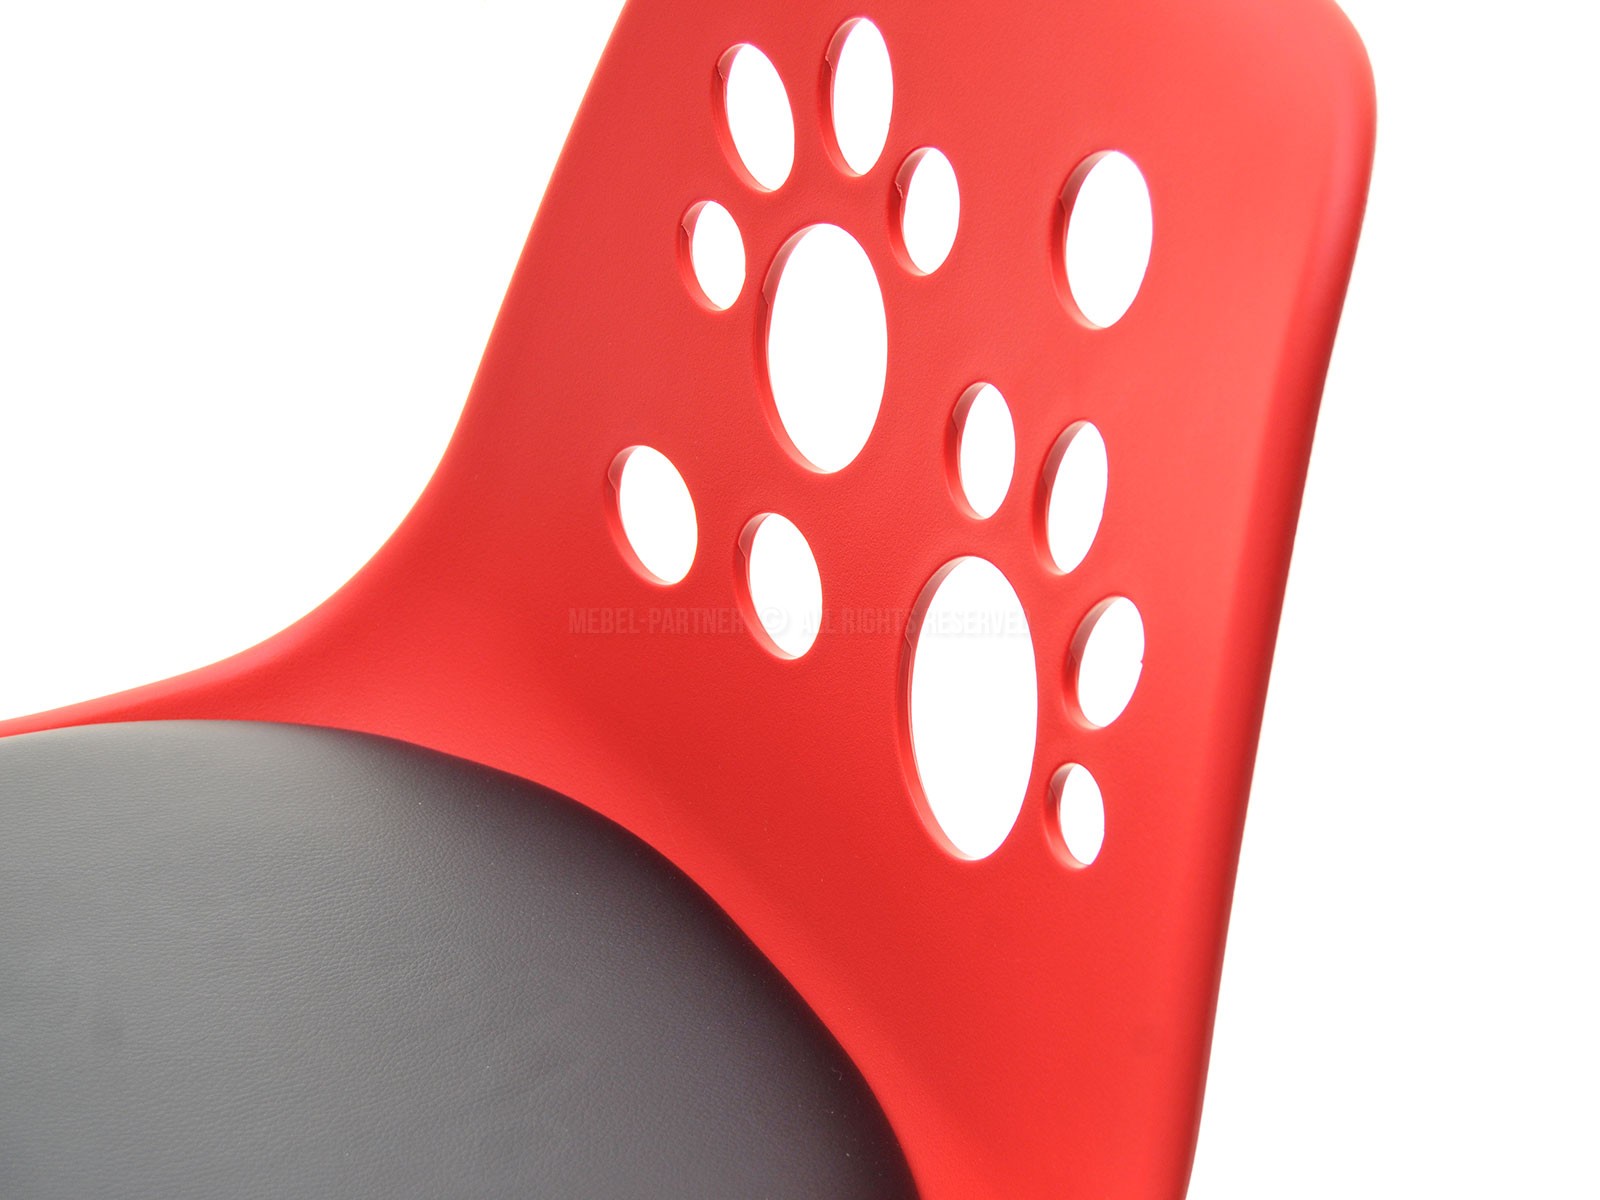 Designerski fotel obrotowy dla dzieci FOOT czerwono - czarny - w aranżacji z zestawem DALEN